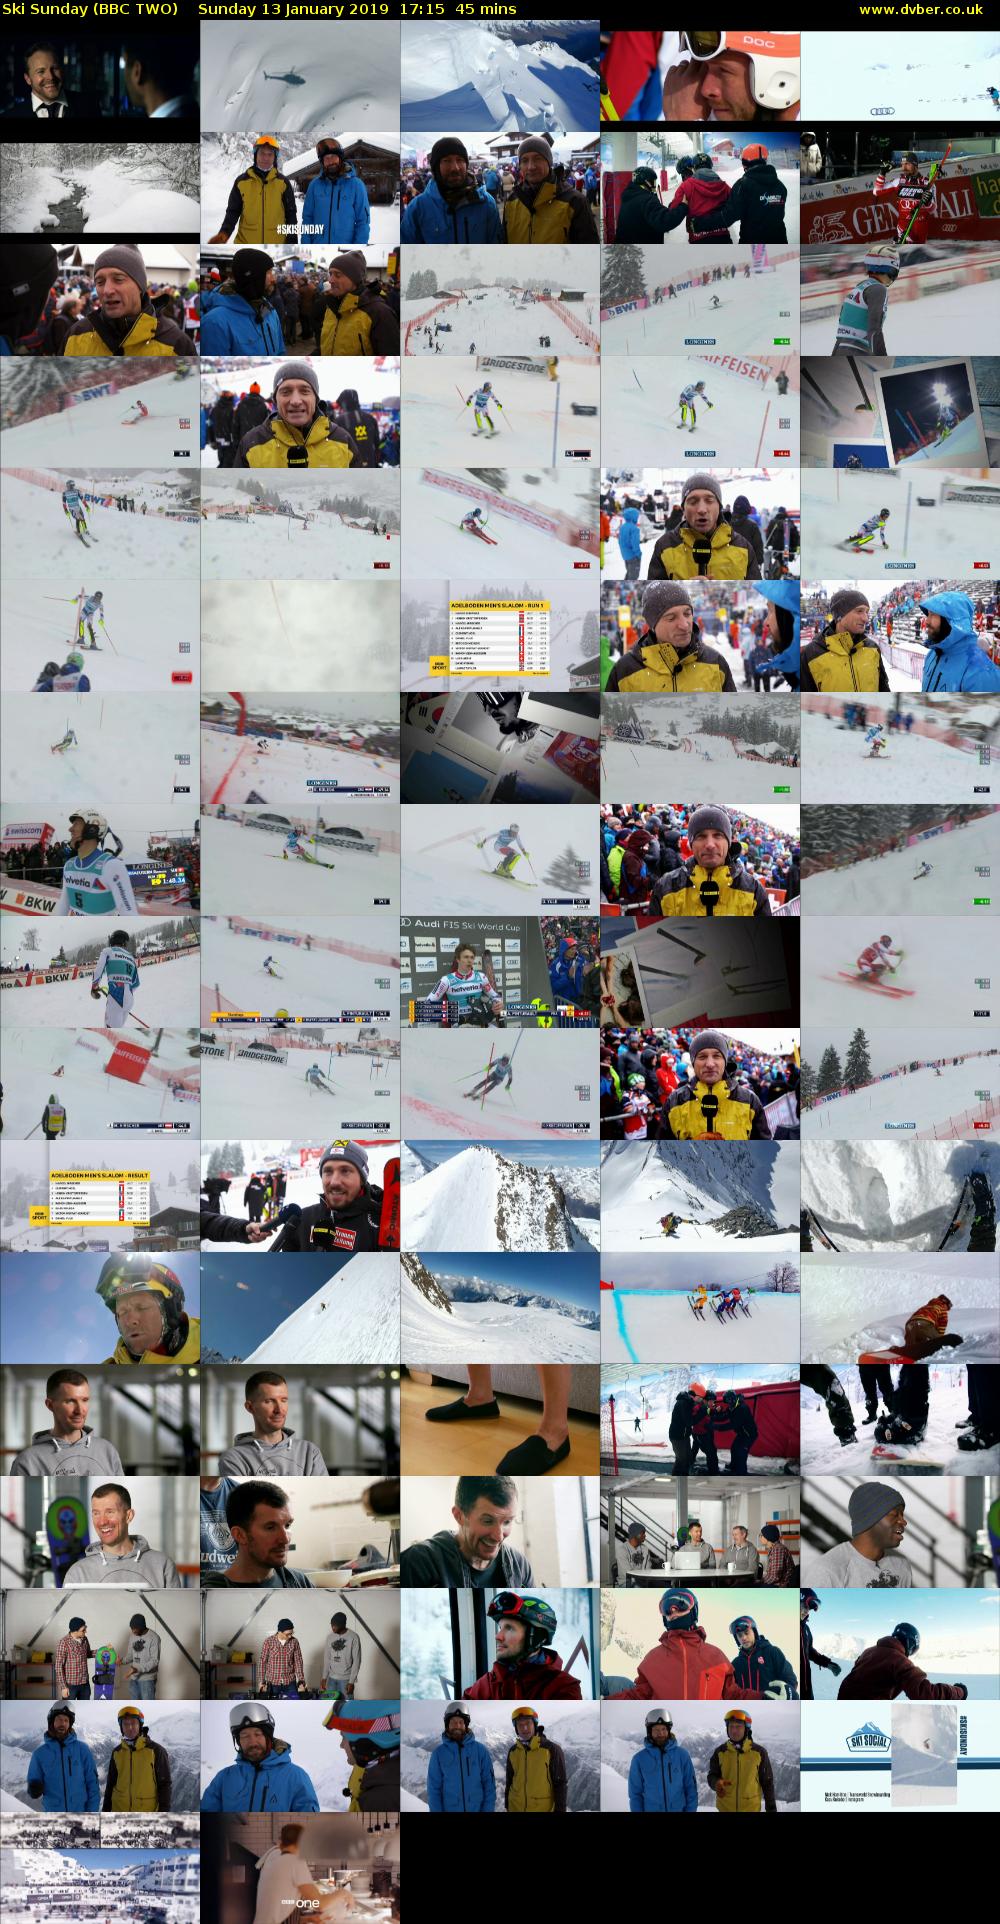 Ski Sunday (BBC TWO) Sunday 13 January 2019 17:15 - 18:00